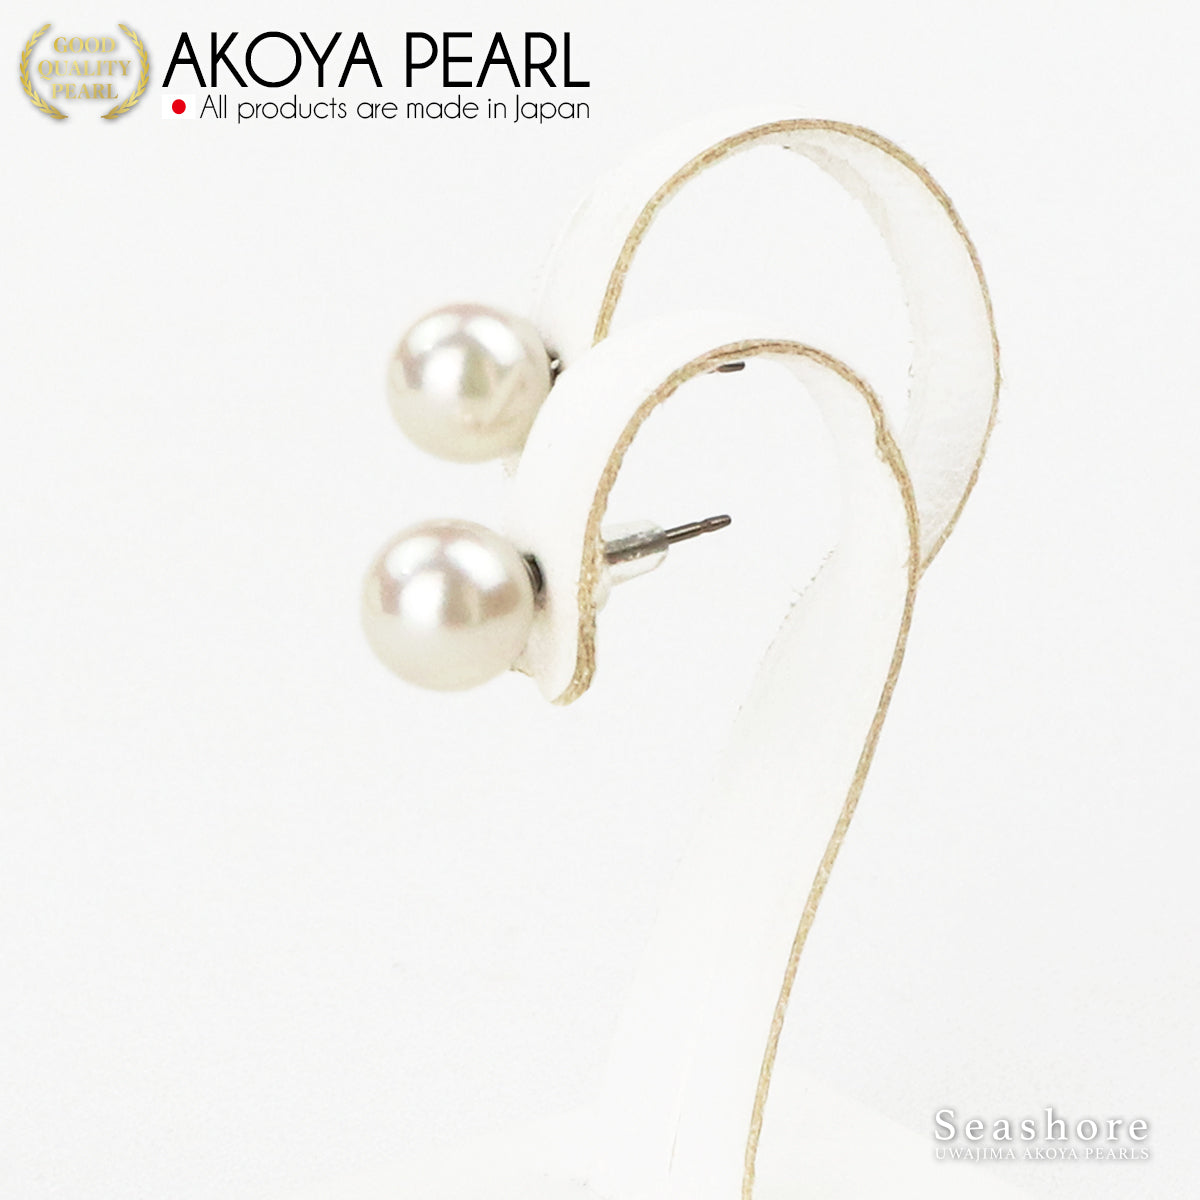 [特选花珠：格雷斯珍珠] 正装项链 2 件套 Akoya 珍珠耳环/穿孔耳环 [9.0-9.5 毫米] 白色 卷厚度 0.4 毫米或以上 真品证书 含收纳盒